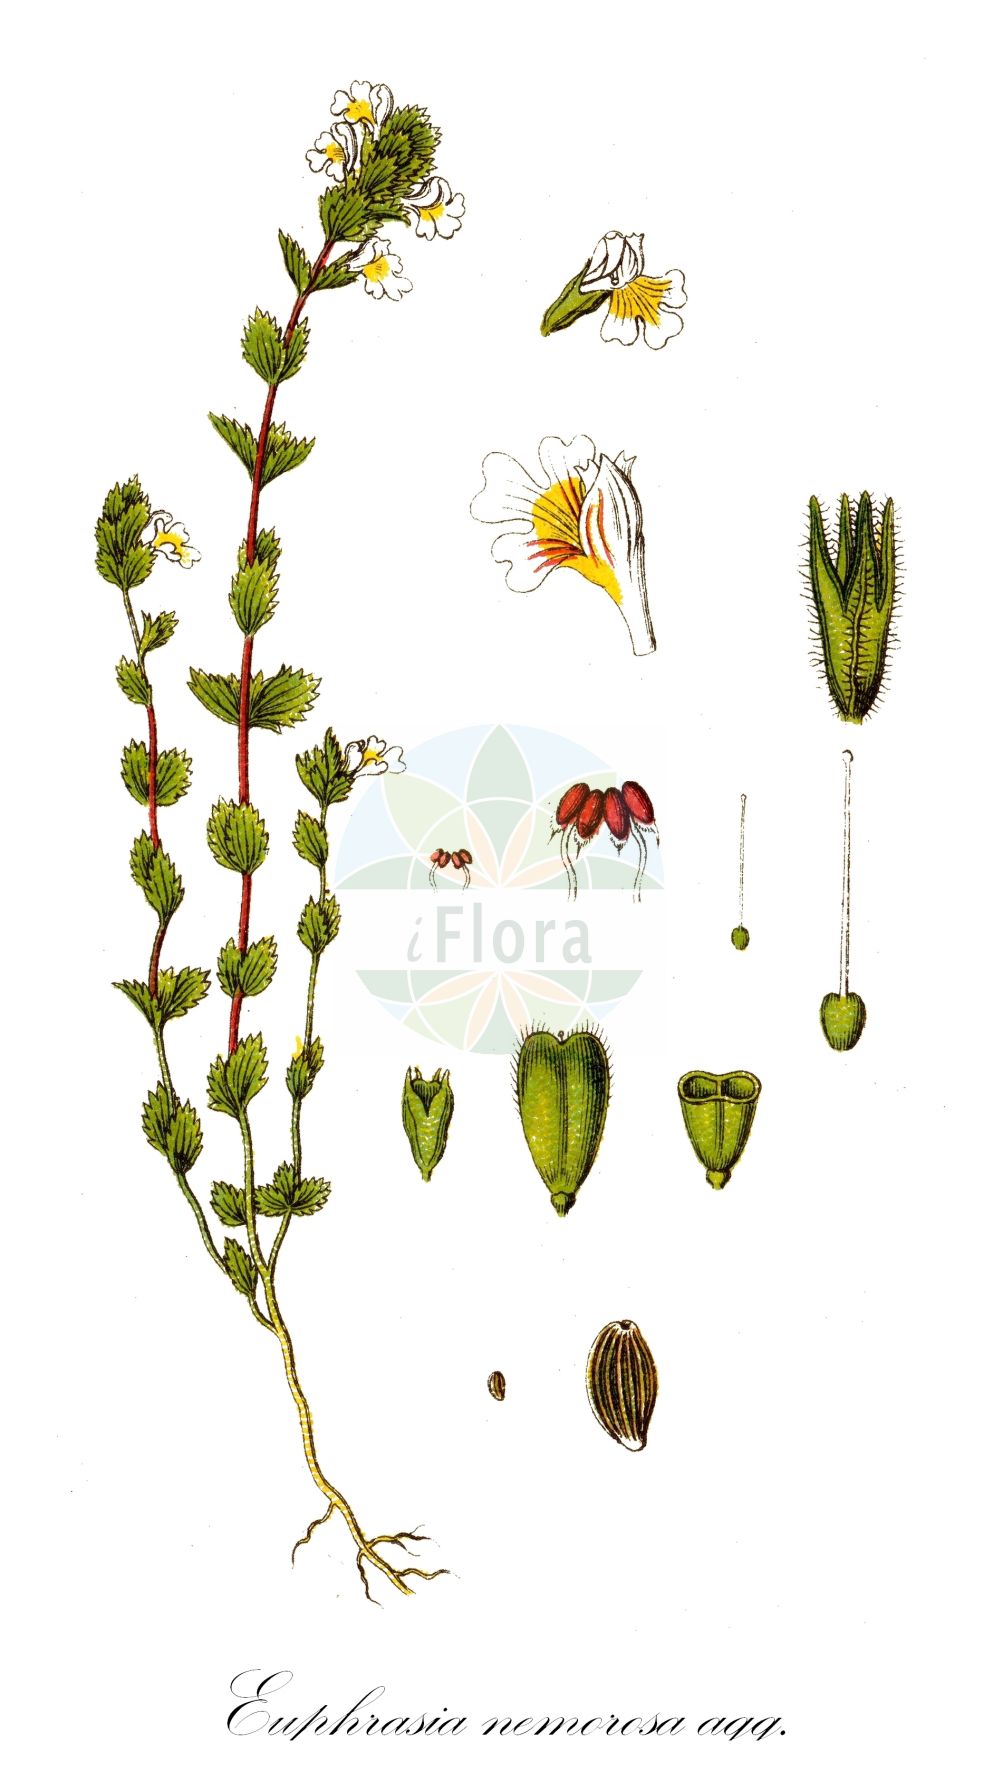 Historische Abbildung von Euphrasia nemorosa agg. (Hain-Augentrost - Wind Eyebright). Das Bild zeigt Blatt, Bluete, Frucht und Same. ---- Historical Drawing of Euphrasia nemorosa agg. (Hain-Augentrost - Wind Eyebright). The image is showing leaf, flower, fruit and seed.(Euphrasia nemorosa agg.,Hain-Augentrost,Wind Eyebright,Hain-Augentrost,Hain-Augentrost,Gewoehnlicher Hain-Augentrost,Wind Eyebright,Euphrasia,Augentrost,Eyebright,Orobanchaceae,Sommerwurzgewächse,Broomrape family,Blatt,Bluete,Frucht,Same,leaf,flower,fruit,seed,Sturm (1796f))